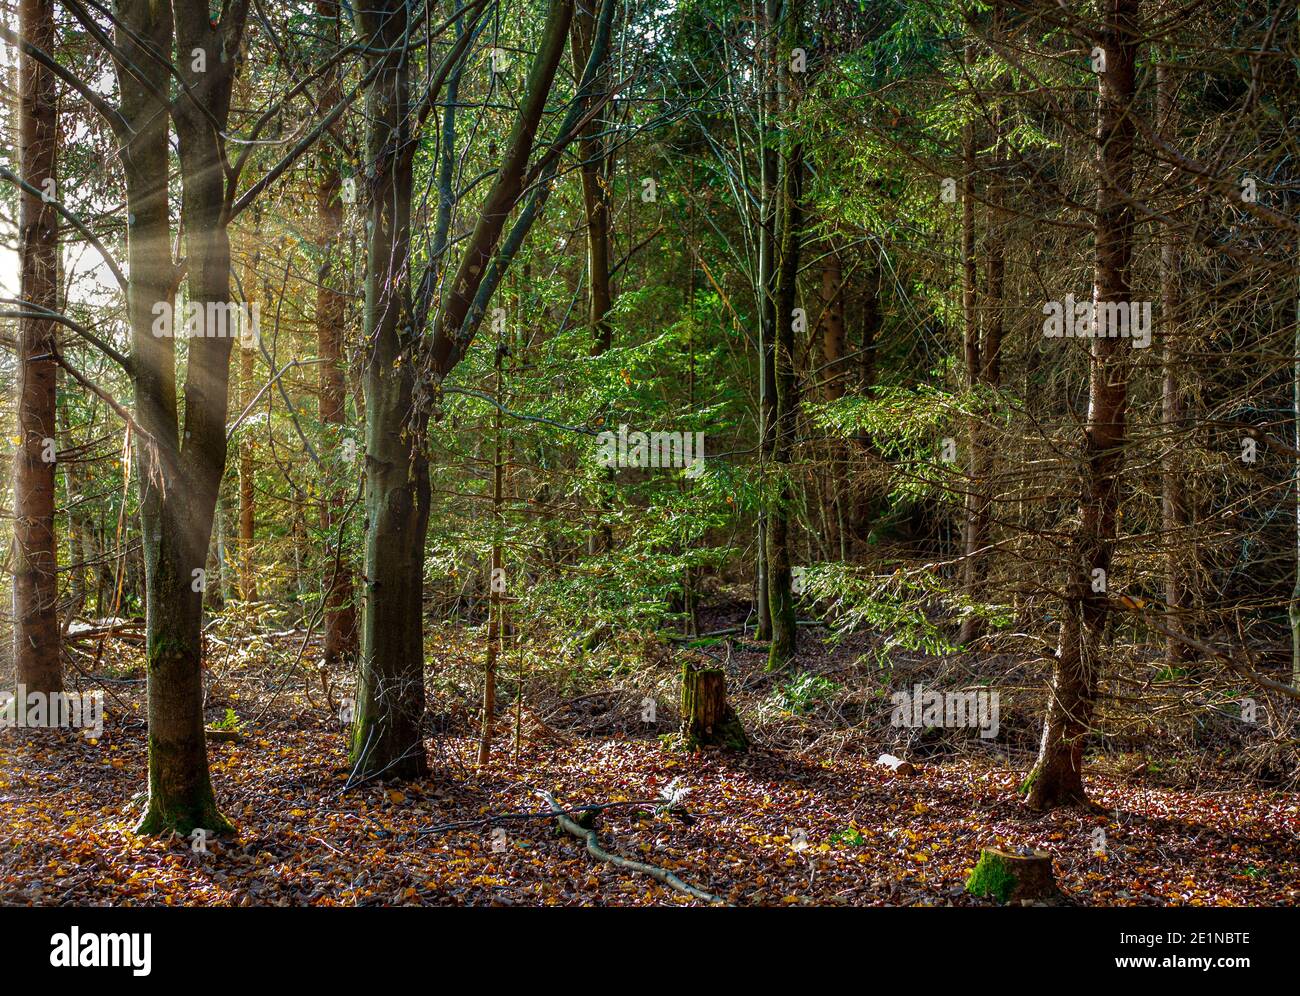 Forêt mixte en automne avec des sprint de Norvège (Picea abies) et des hêtres européens (Fagus sylvatica), rétroéclairé, haute-Bavière, Allemagne, Europe Banque D'Images